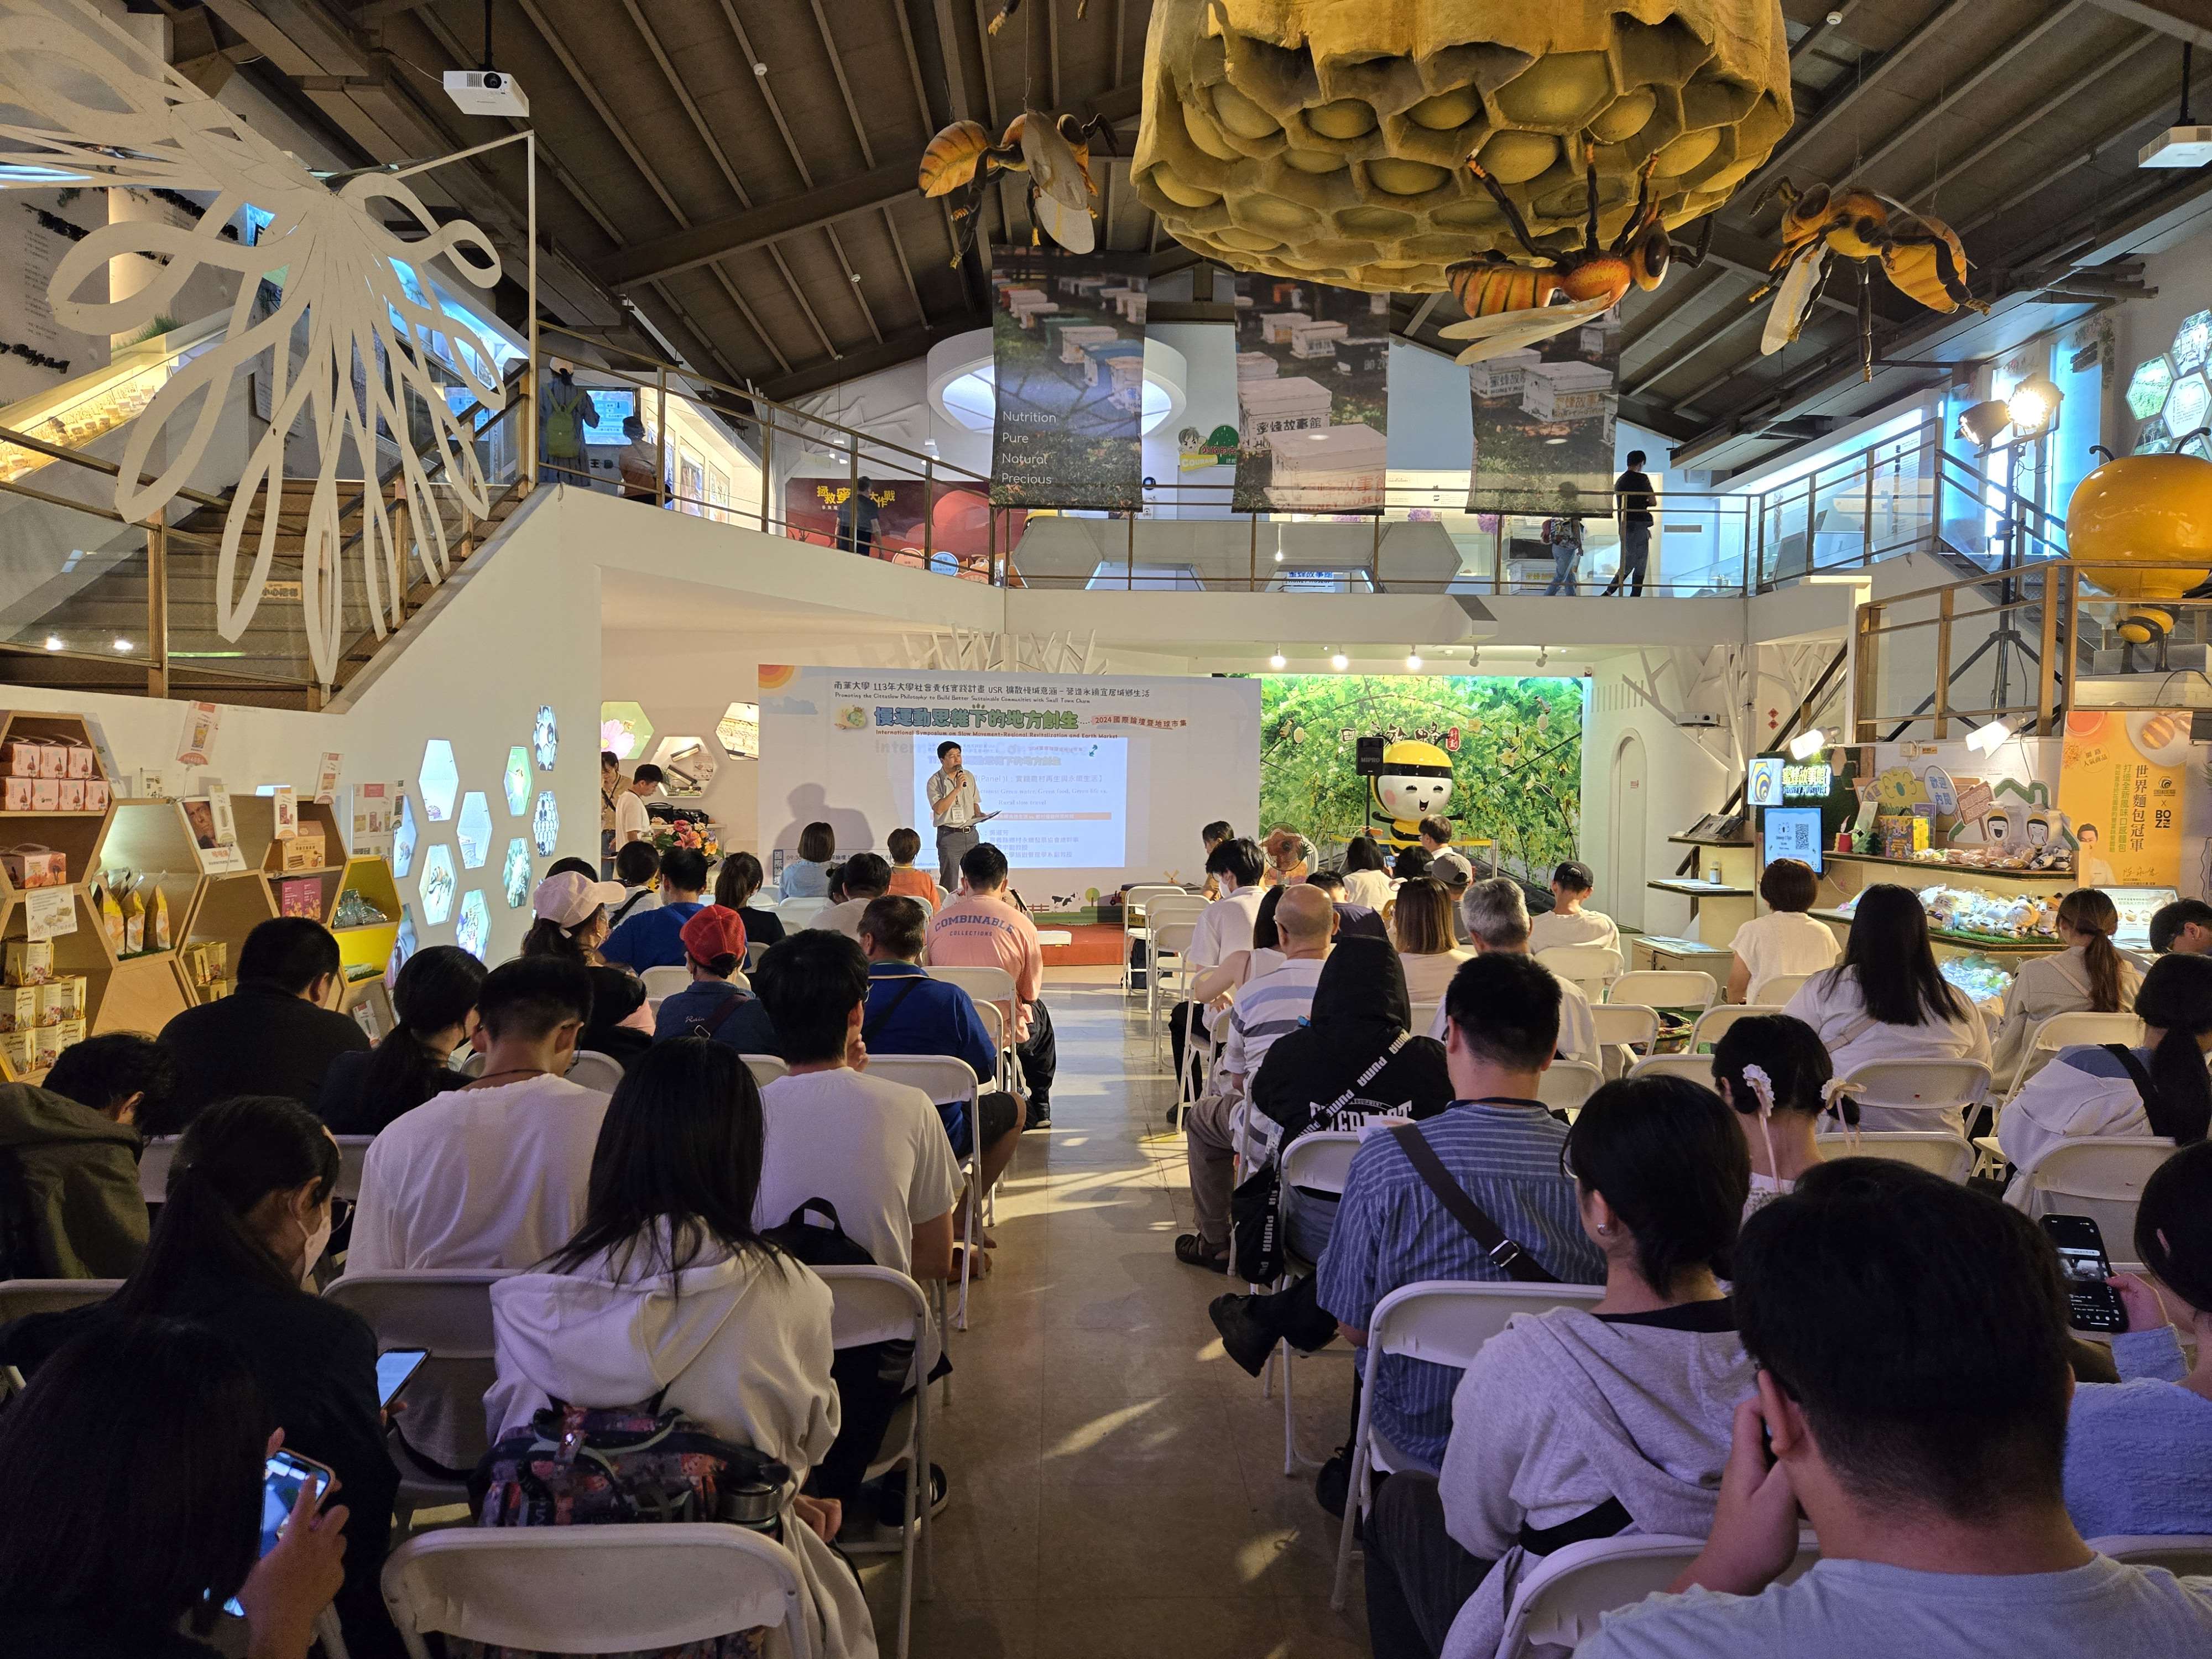 國際論壇邀請嘉義及雲林地區實踐綠色永續慢遊的專家，以及泰國和台灣執行數位科技於文化傳統的教授群，共同發展對話來倡議發展循環經濟策略的行動。